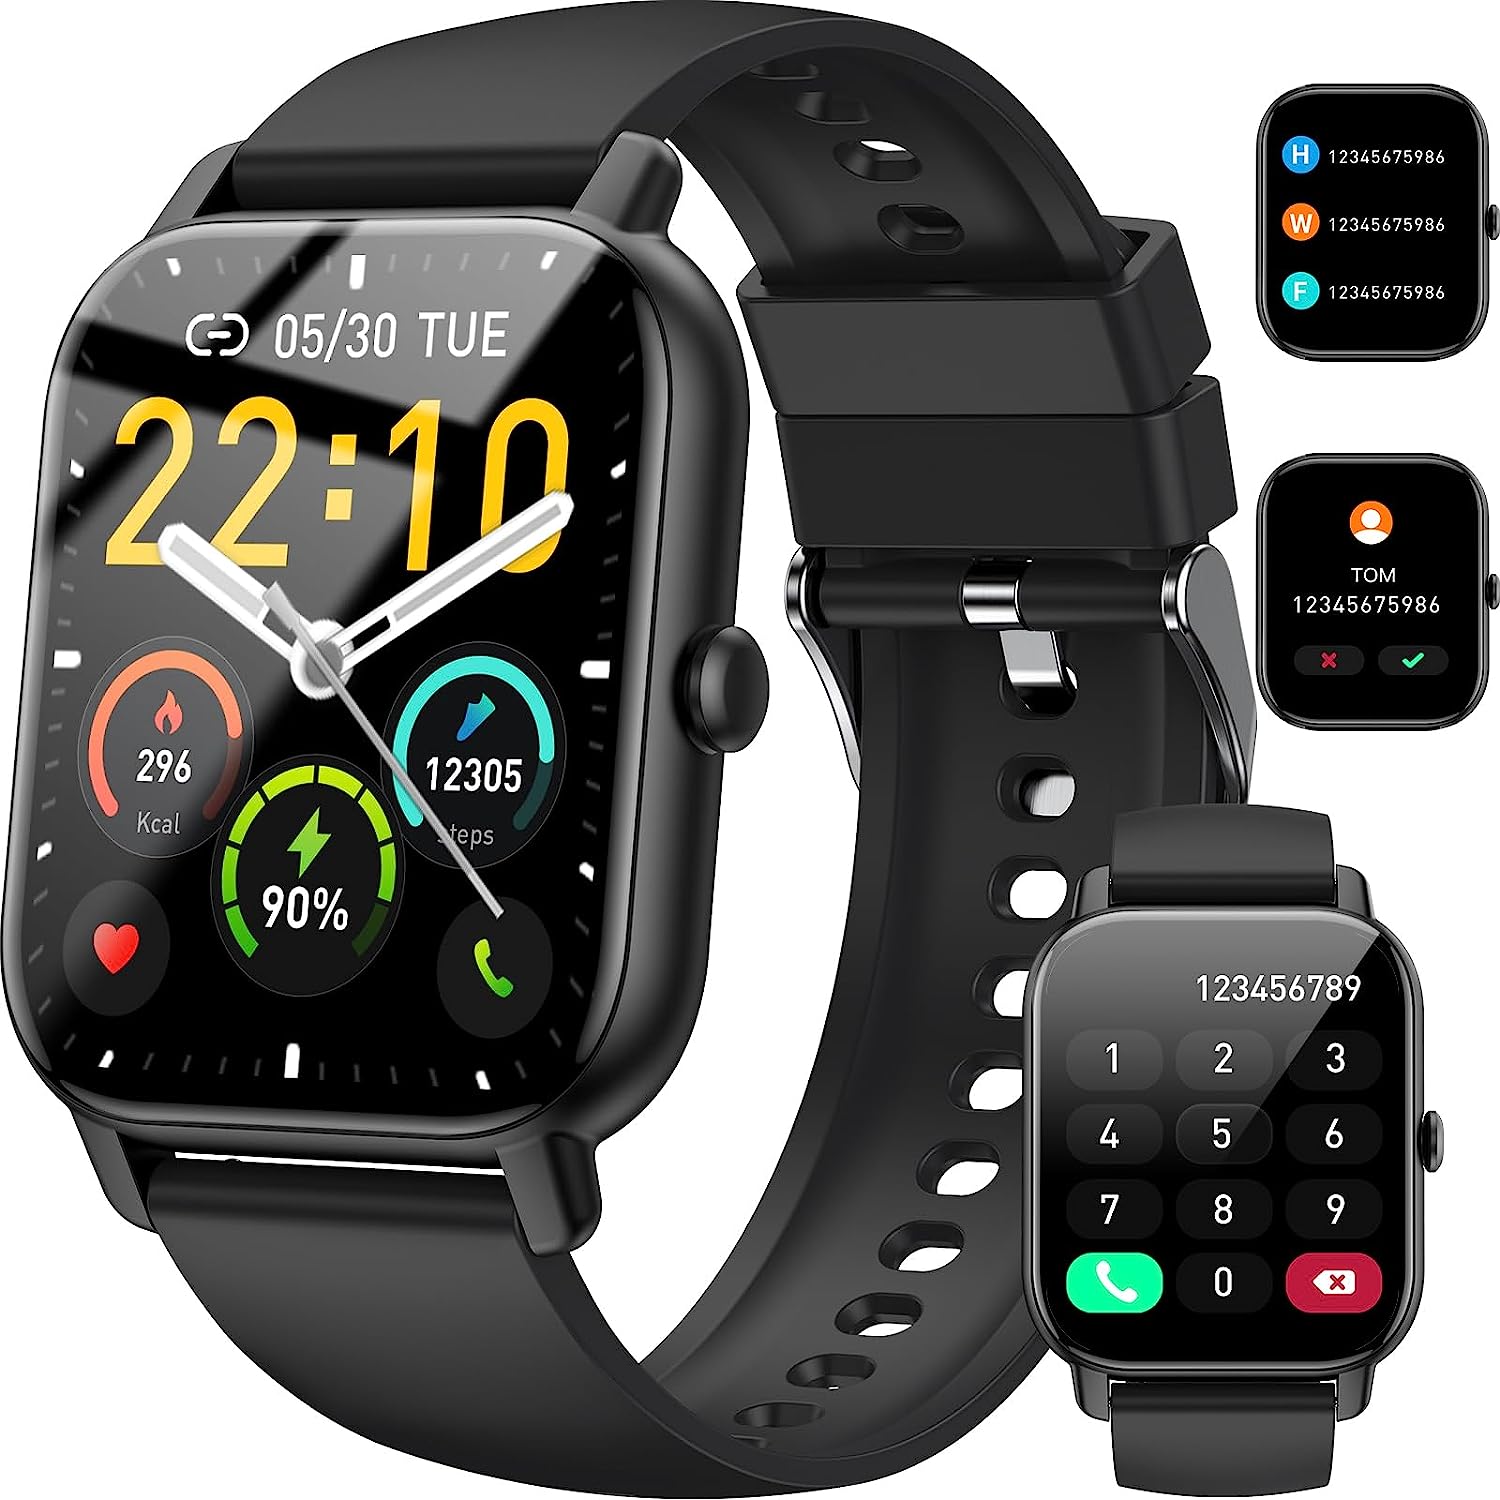 Wenn Sie nach einer günstigeren Alternative zu einem FitBit oder einer Apple Watch suchen, probieren Sie dieses Gadget mit 68 % Rabatt aus